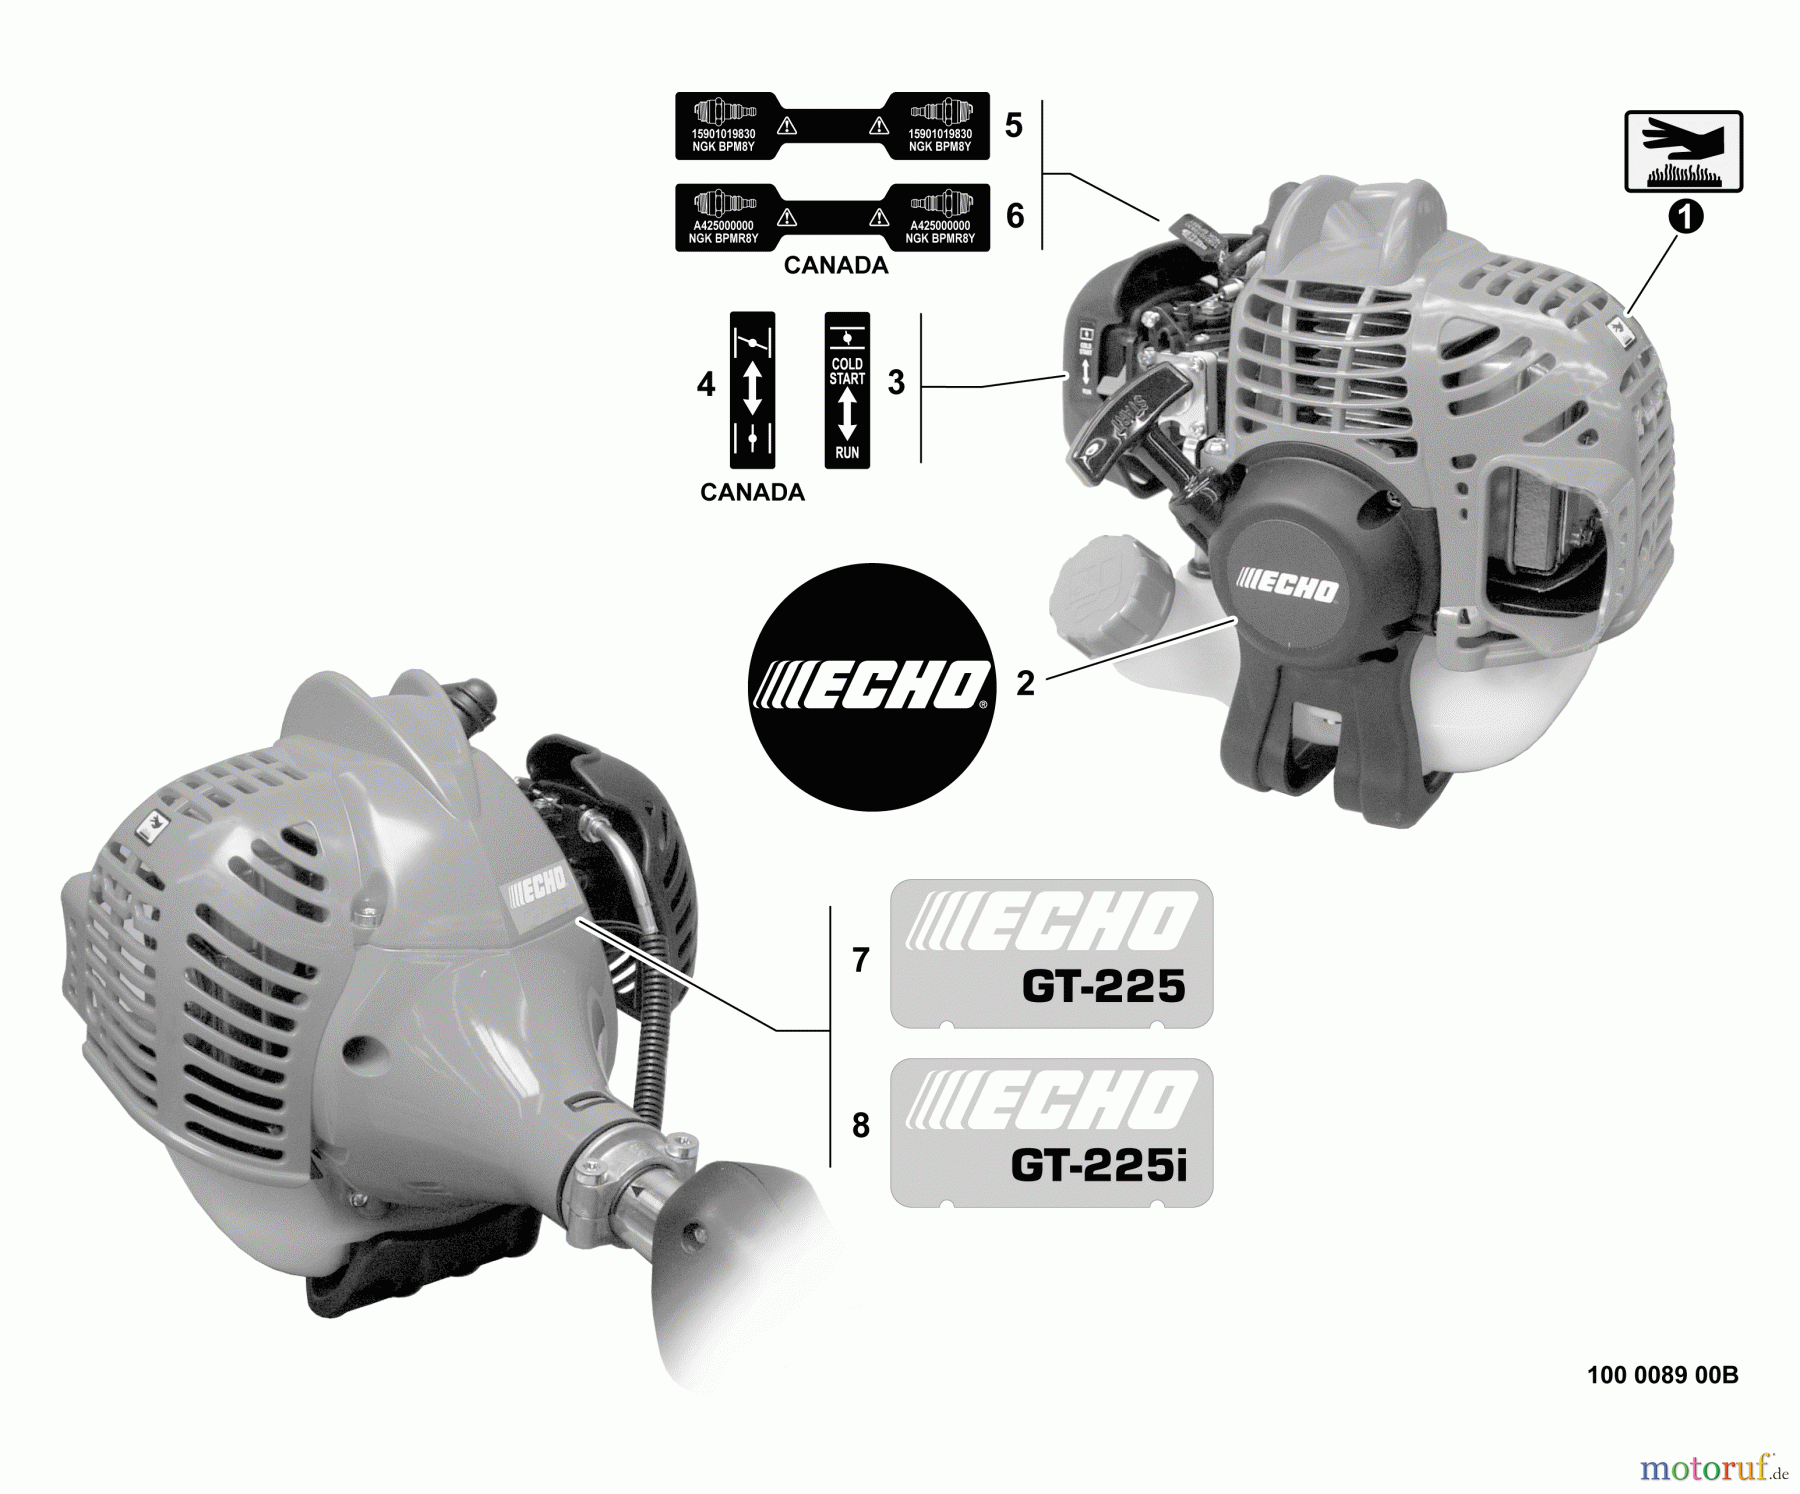  Echo Trimmer, Faden / Bürste GT-225 - Echo String Trimmer, S/N: S94626001001 - S94626999999 Labels